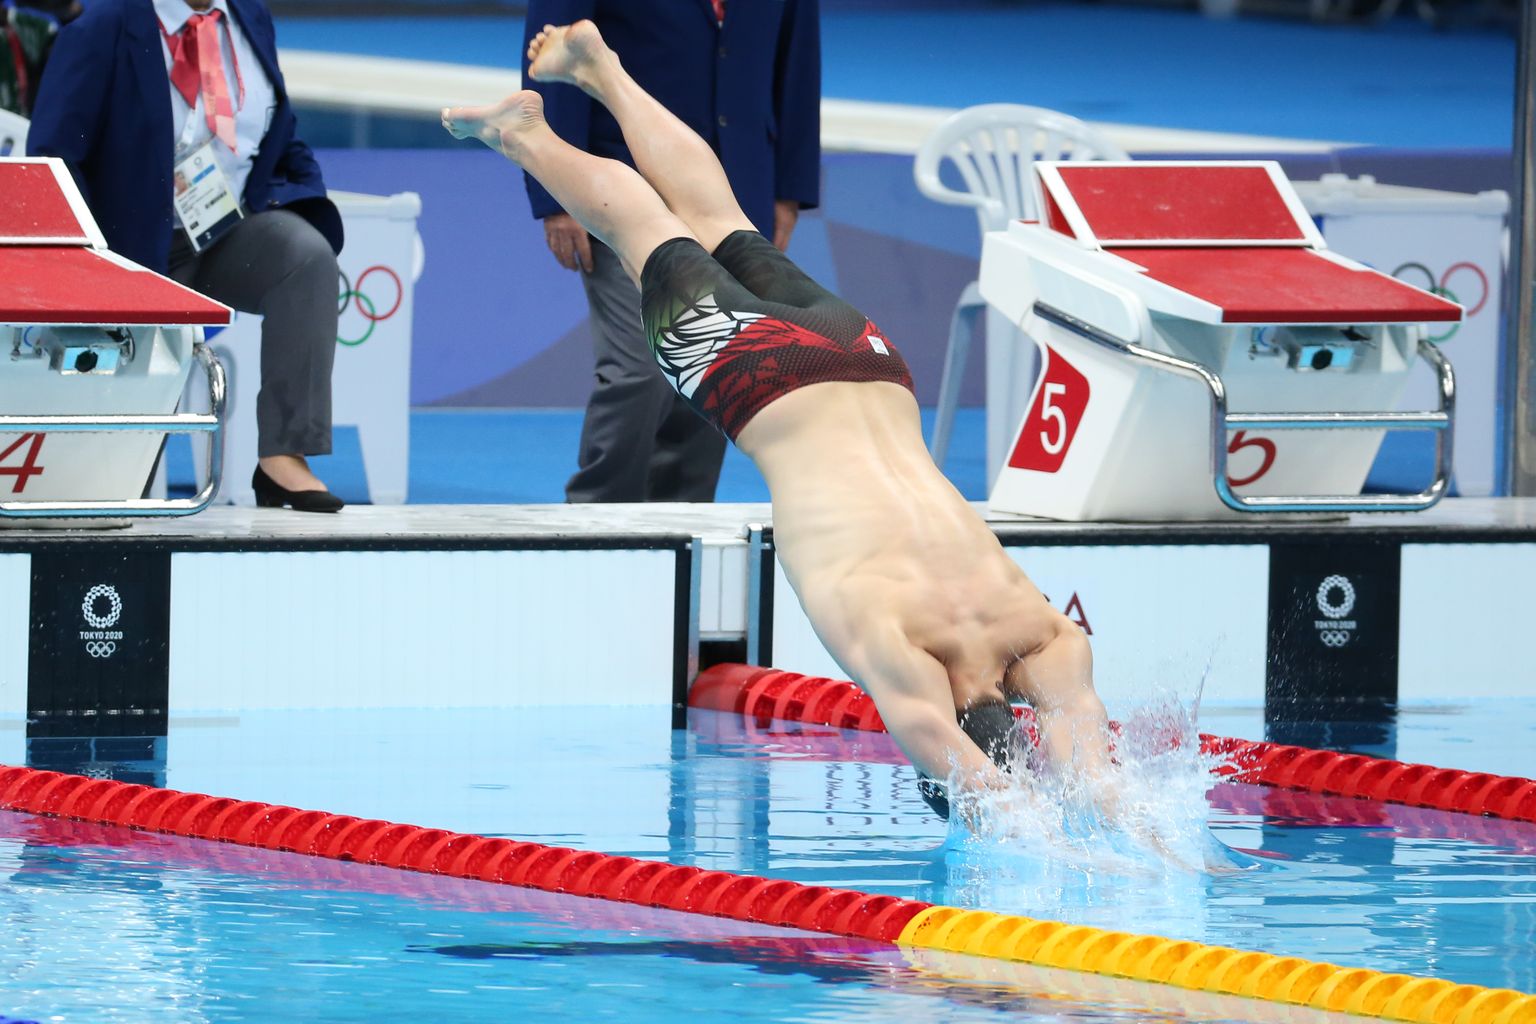 Ungarlane Kristof Milak Tokyo olümpia meeste 200 meetri liblikujumise stardis. Ta võitis ajaga 1.51,25, mis on olümpiarekord